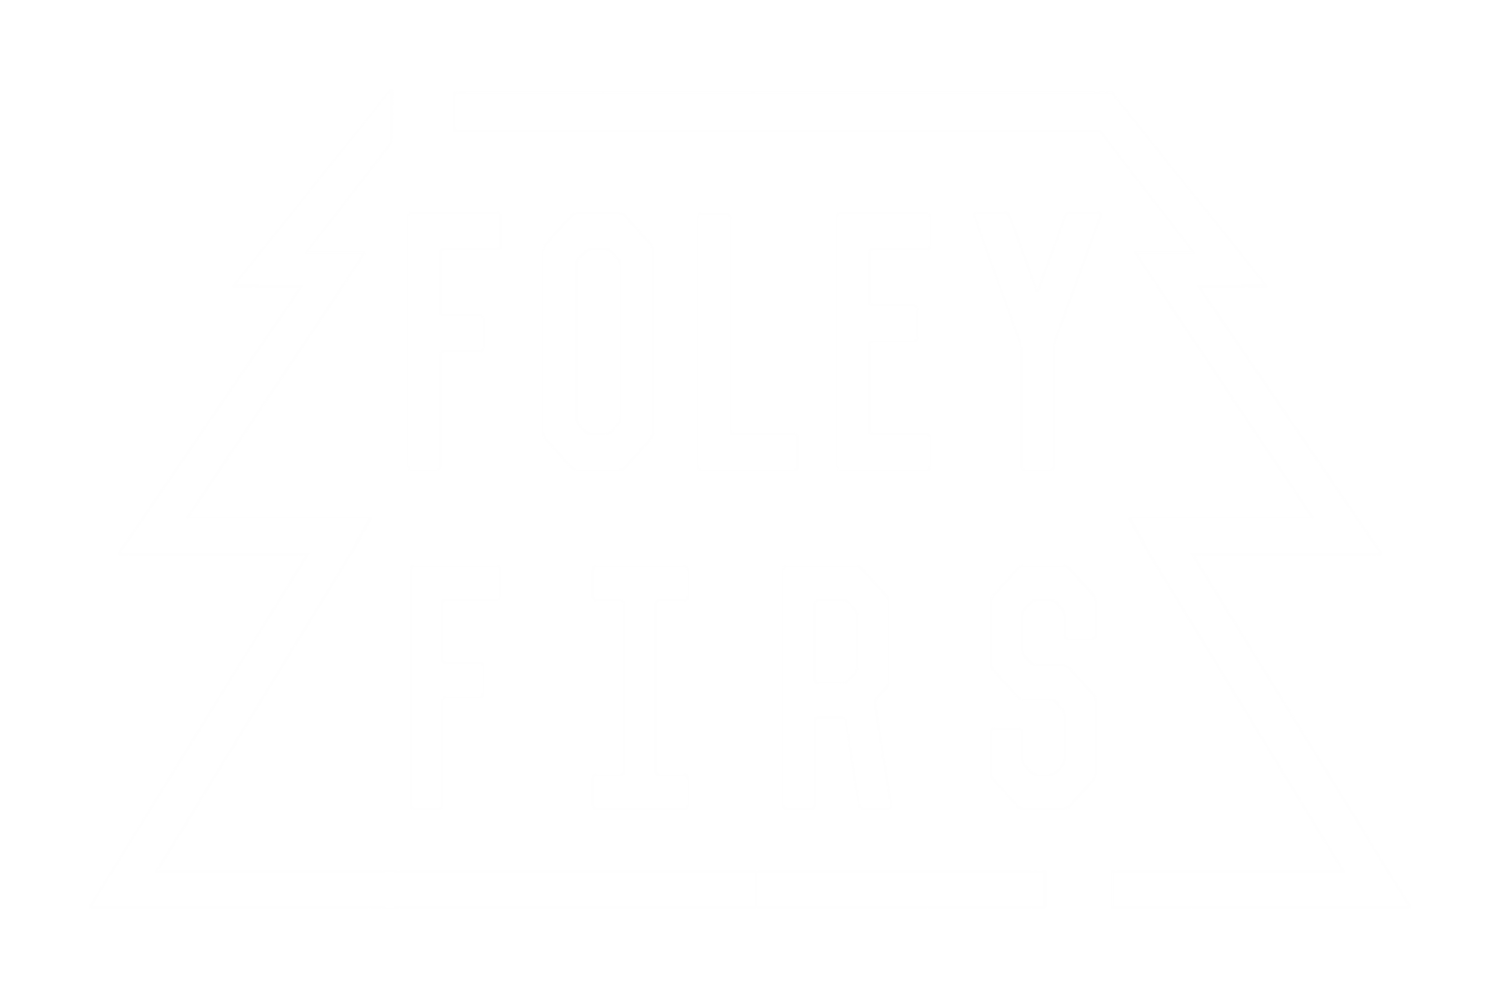 Foley Firs